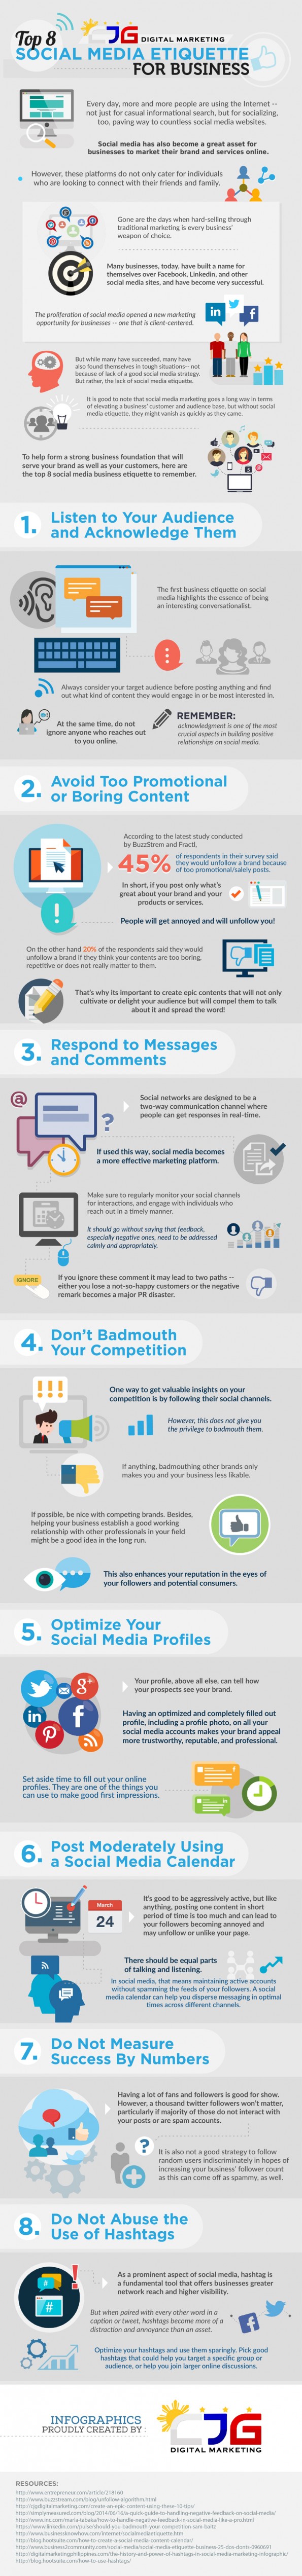 etiquette voor zakelijk social mediagebruik - 8 tips - infographic